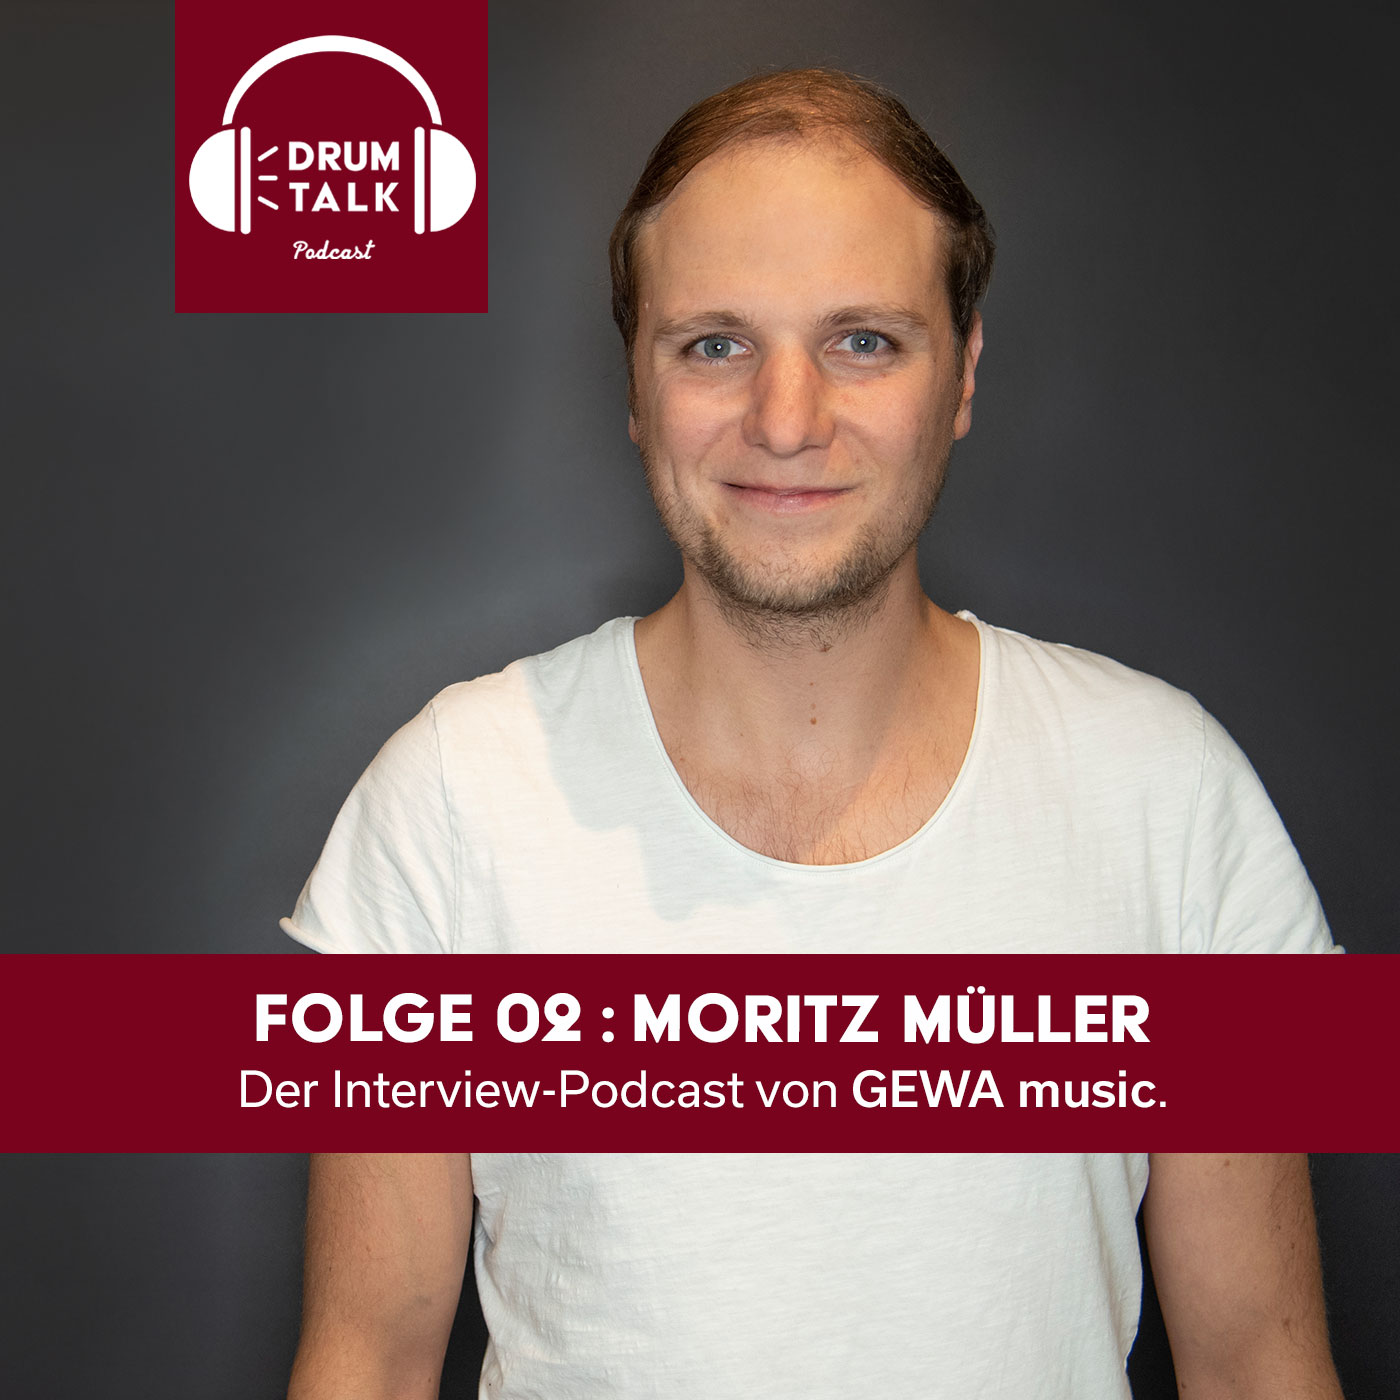 DT02 - Moritz Müller: Live oder Studio oder TV oder...?